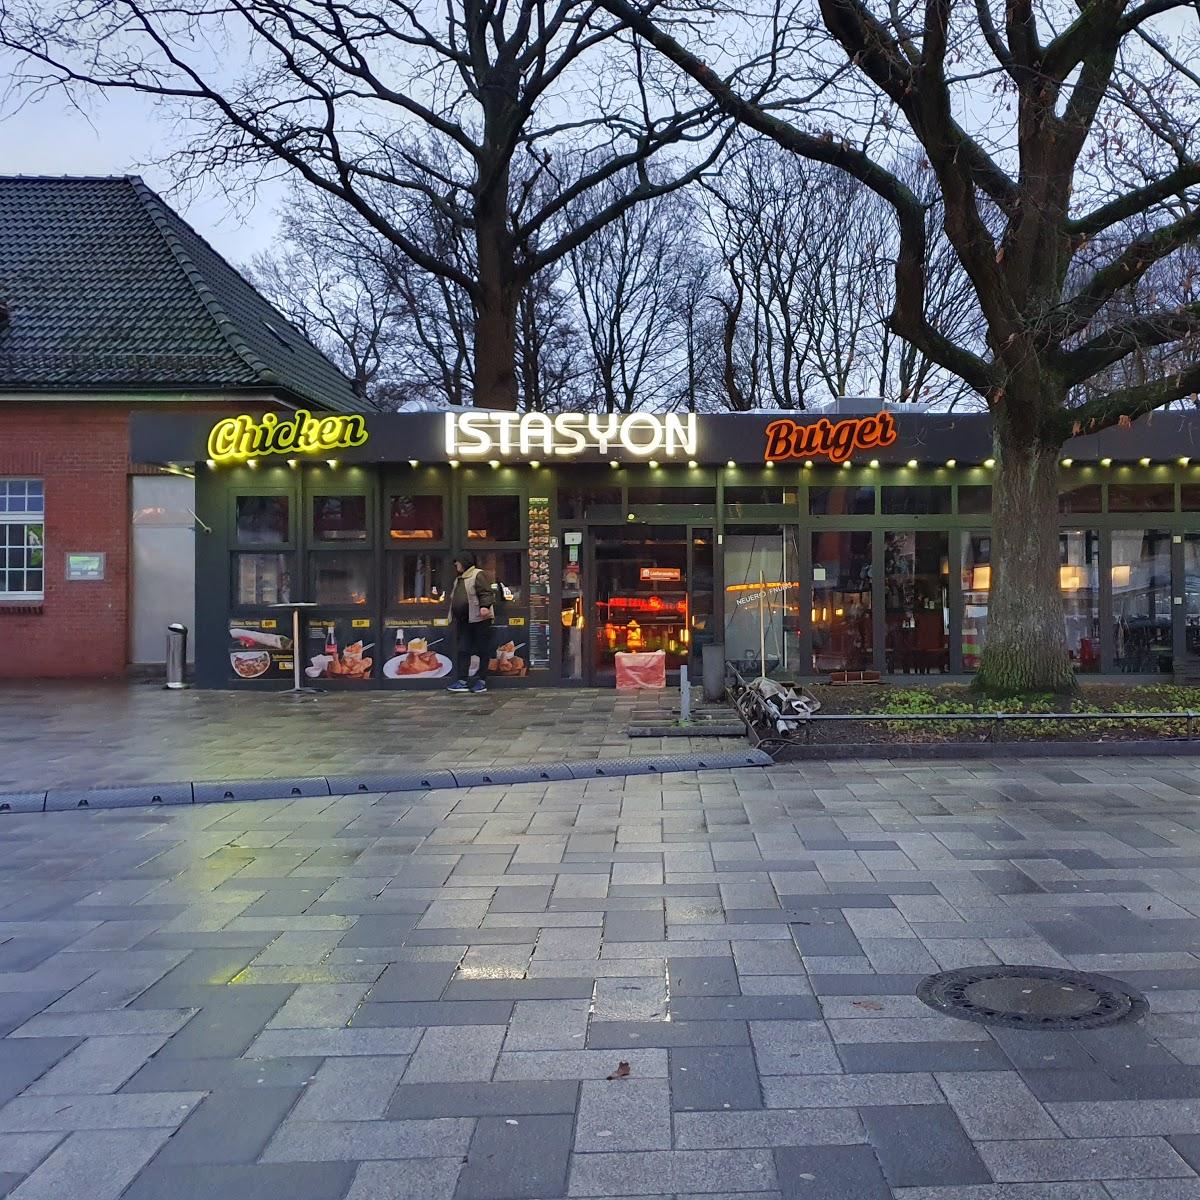 Restaurant "Restaurant Istasyon" in Hamburg